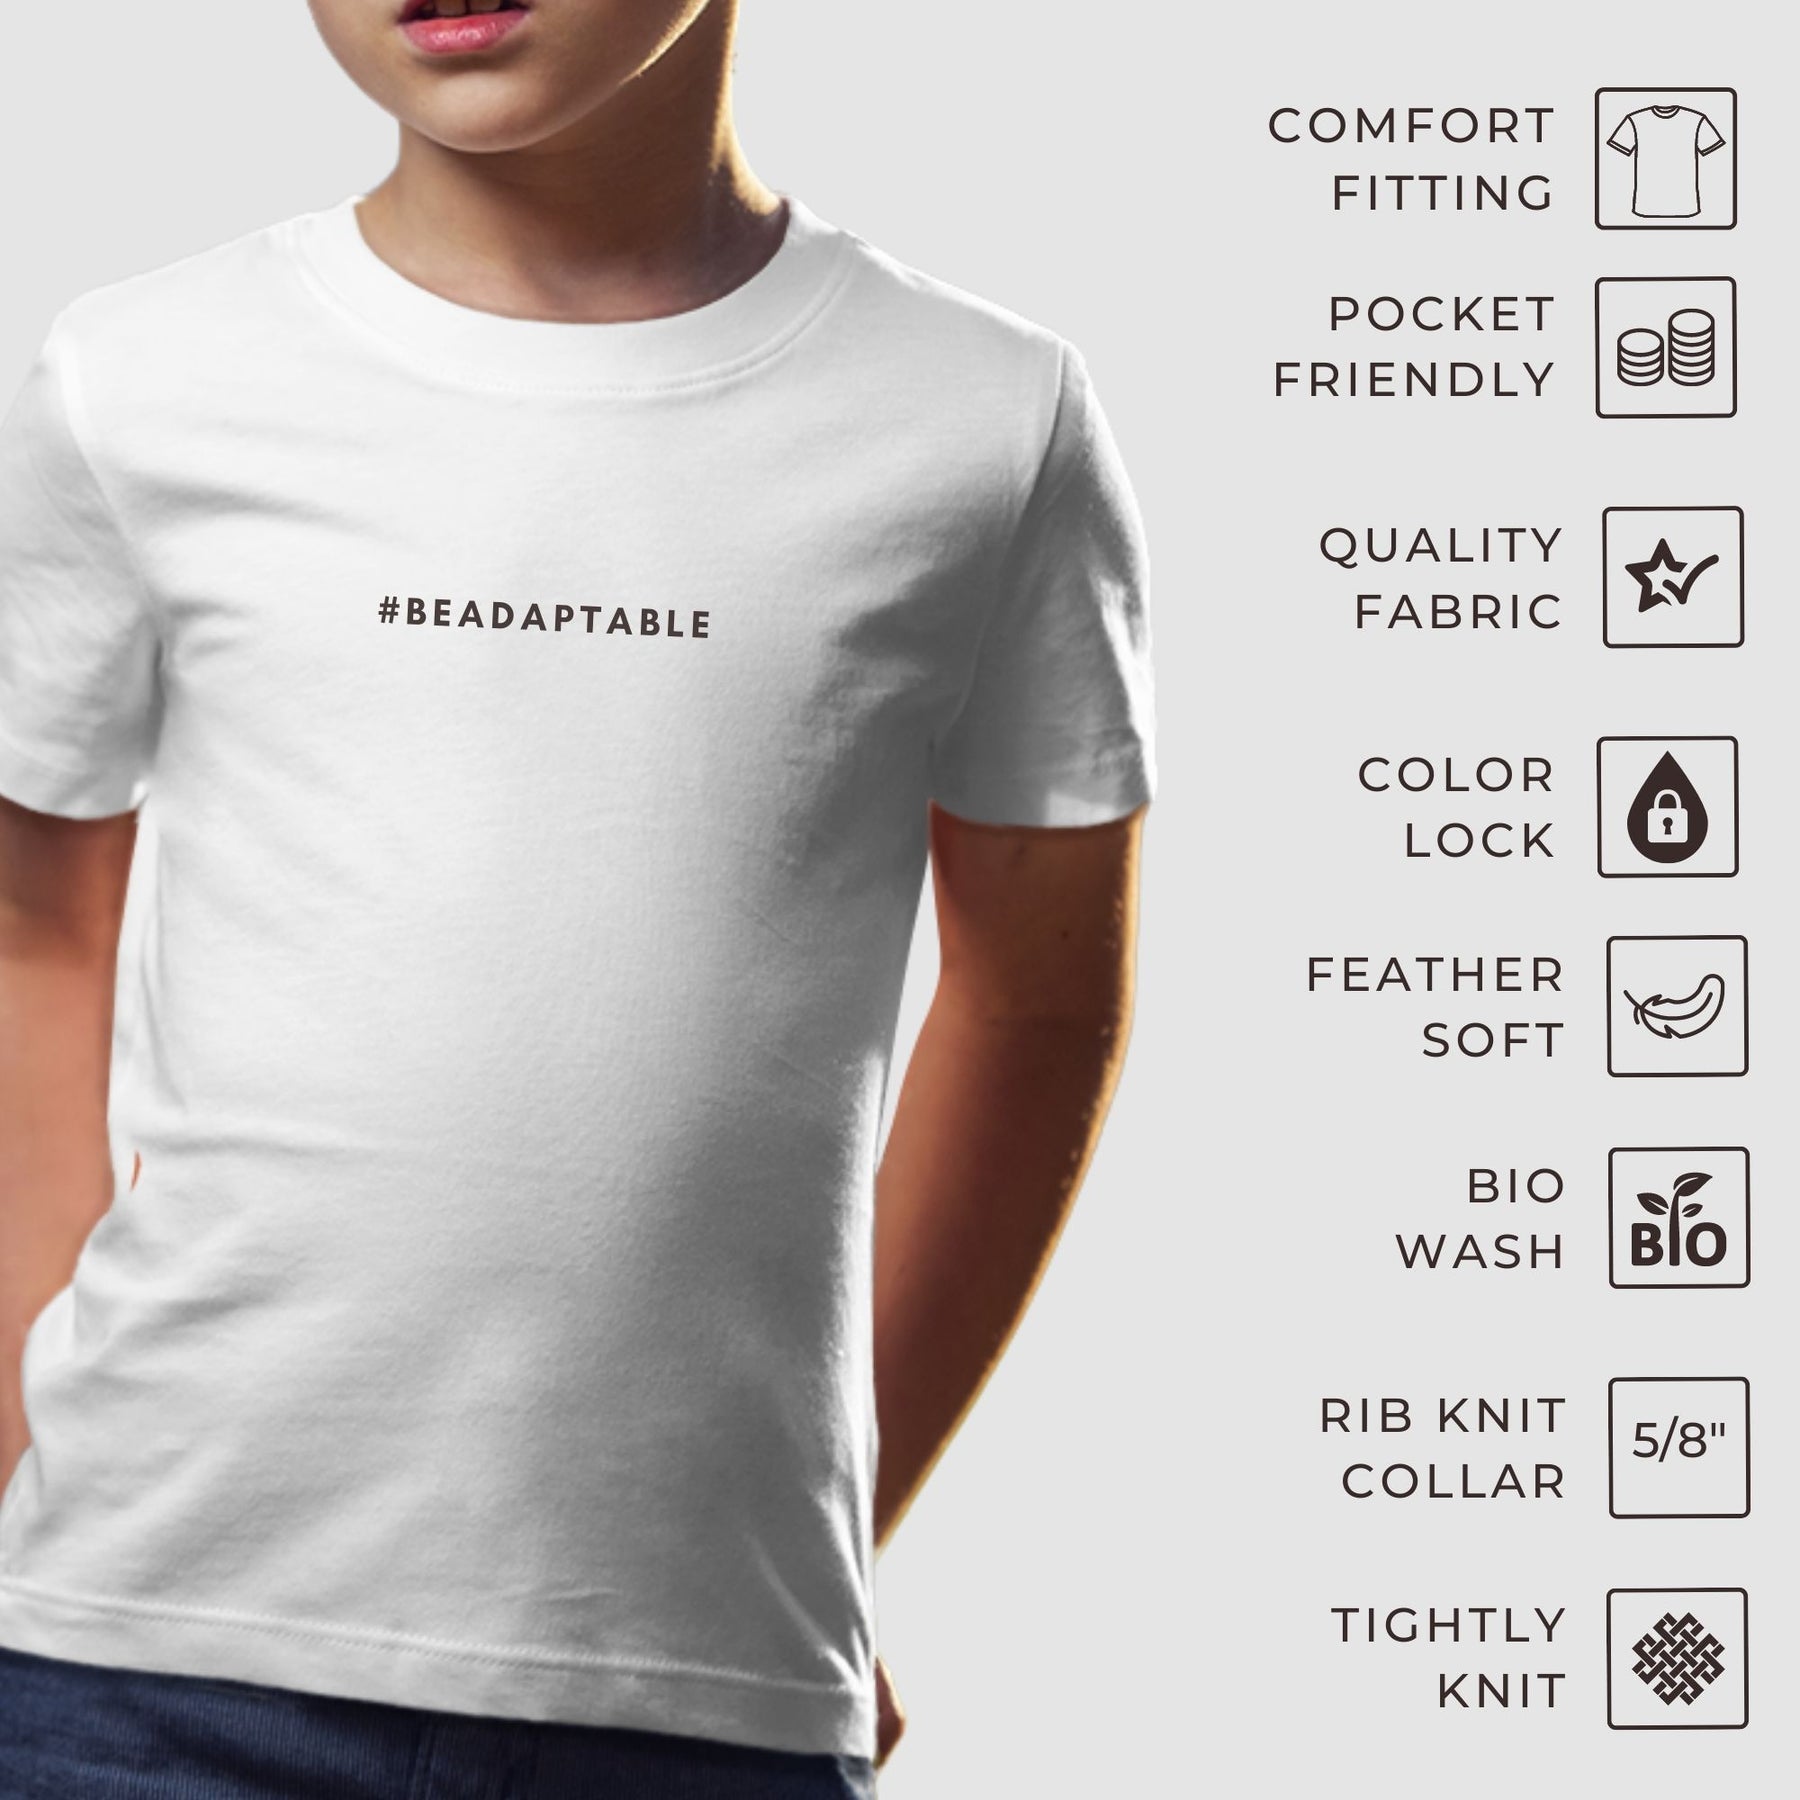 compact-cotton-kids-t-shirts-feature-page-gogirgit-com_a9e95cde-fe68-482a-894b-54d311d1061d